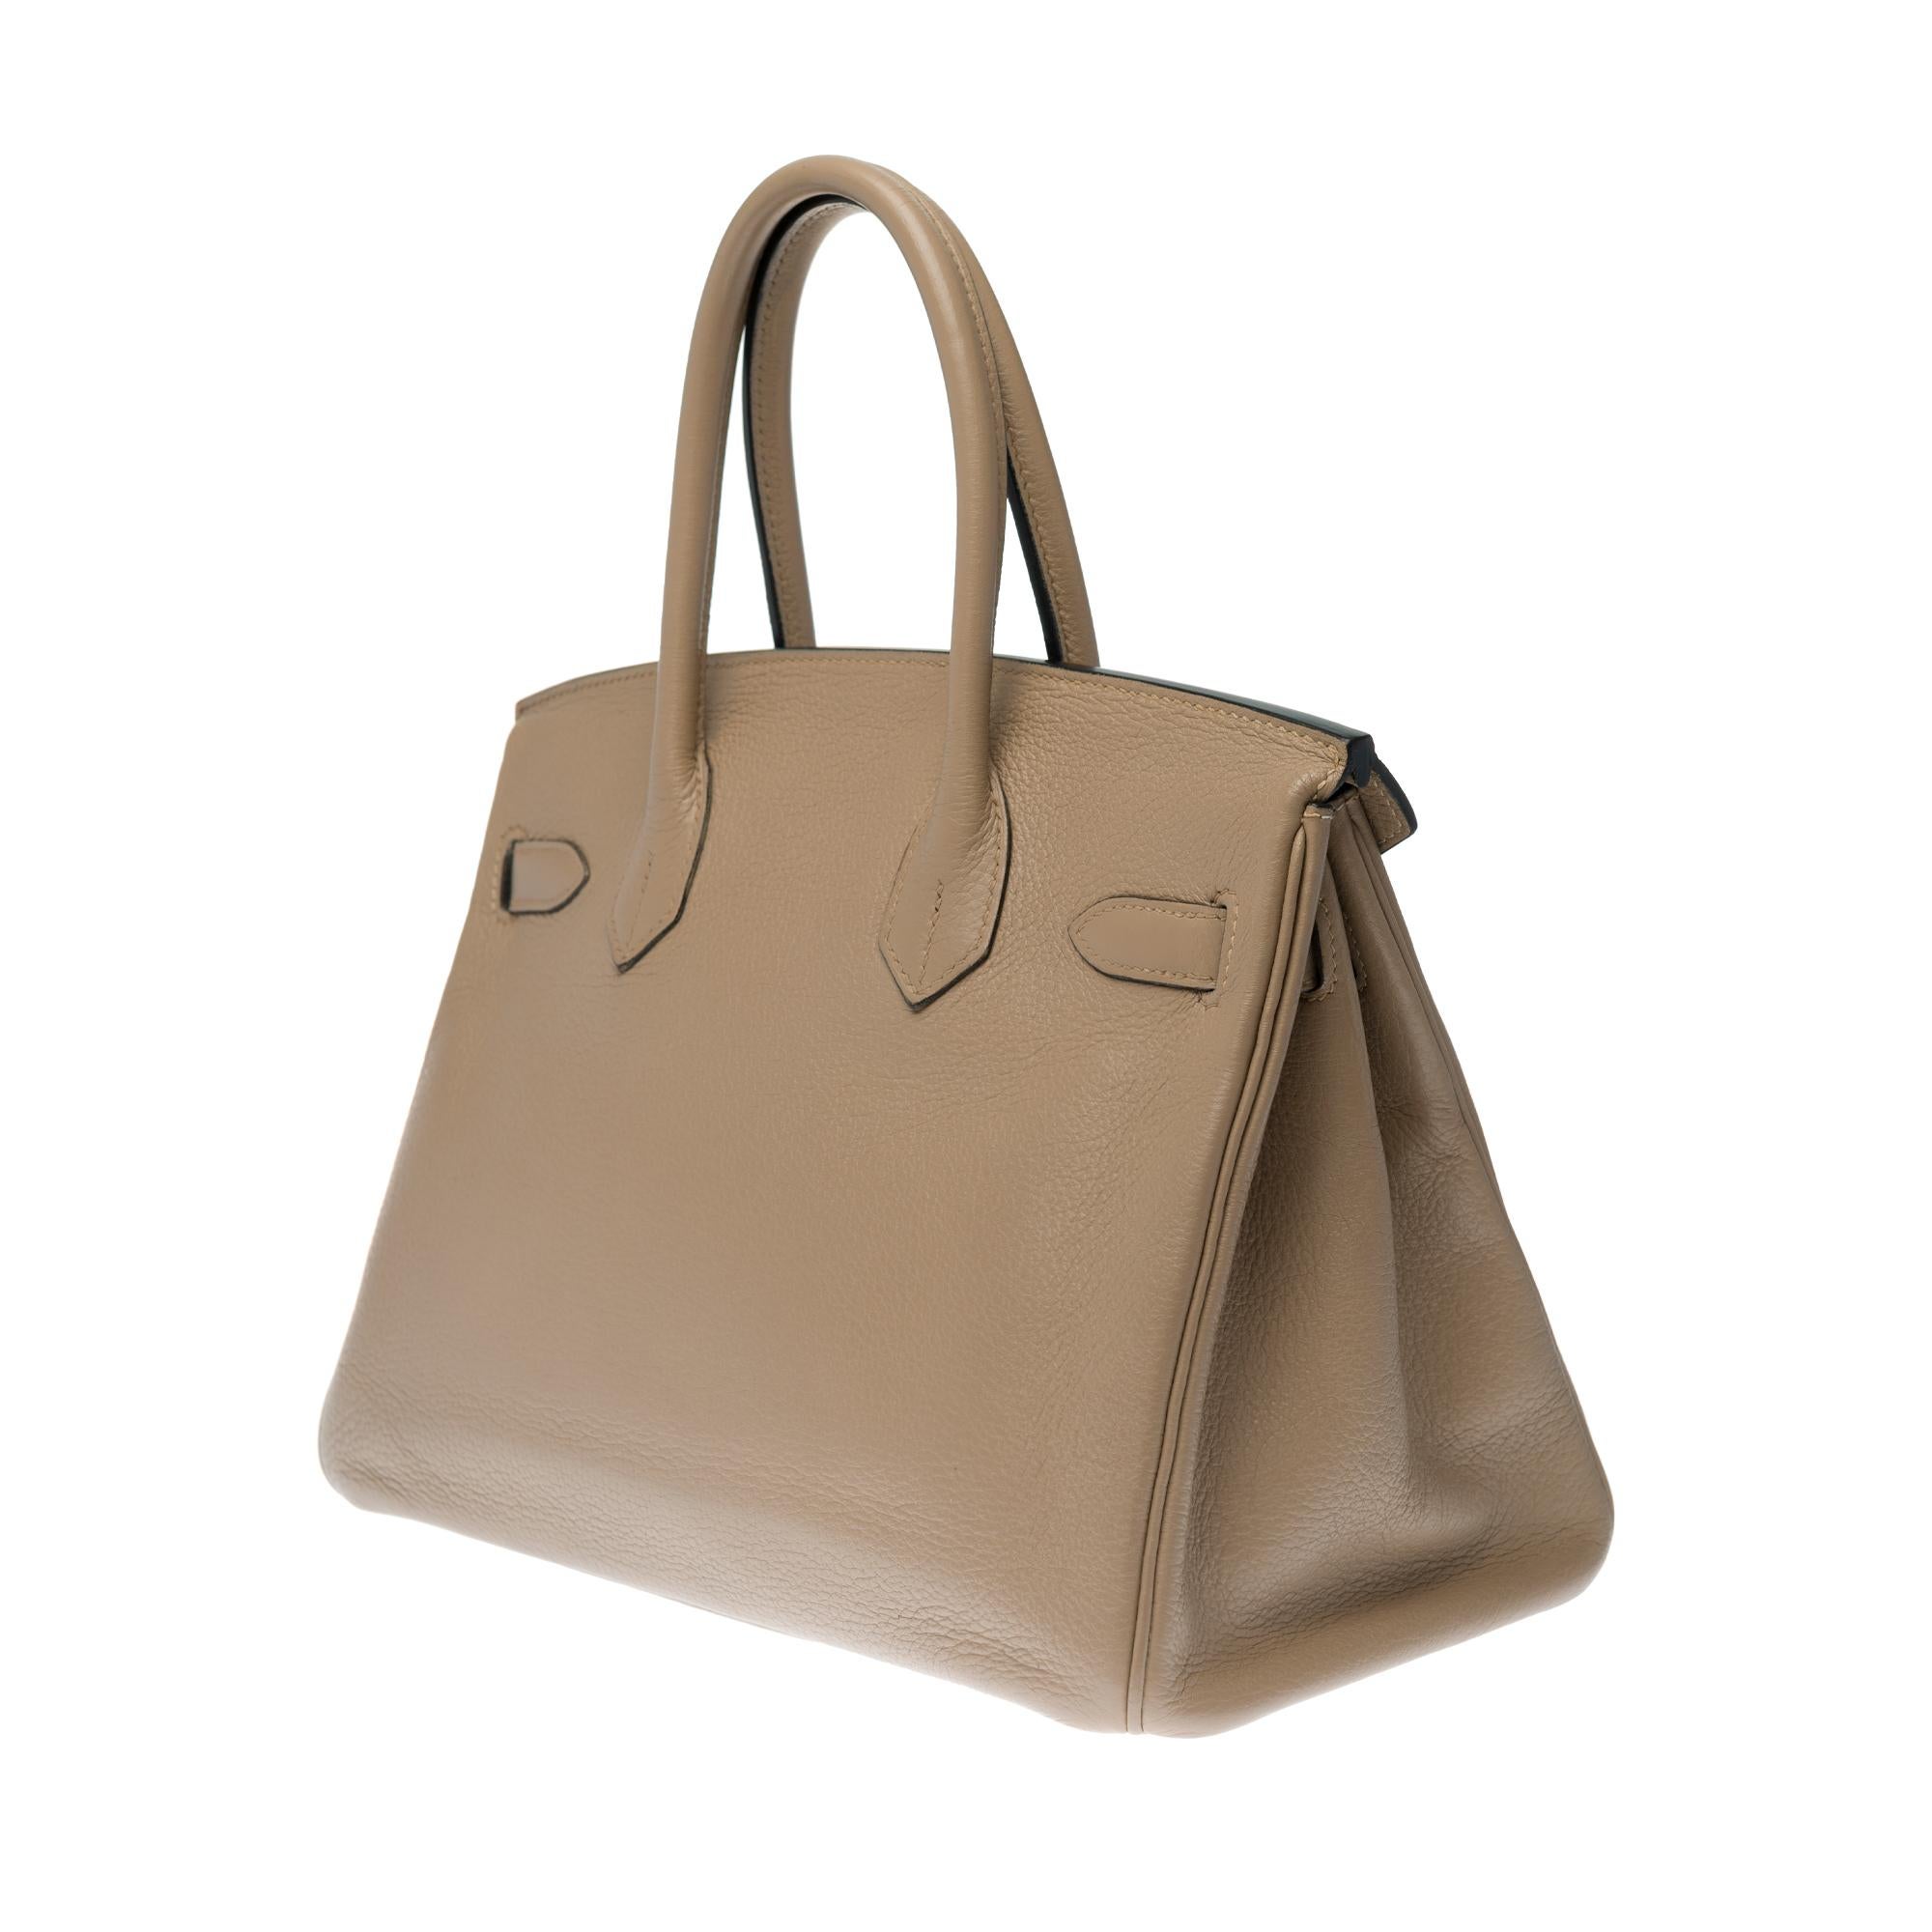 Brown Hermès Birkin 30 handbag in Trench Togo leather, silver Palladium hardware